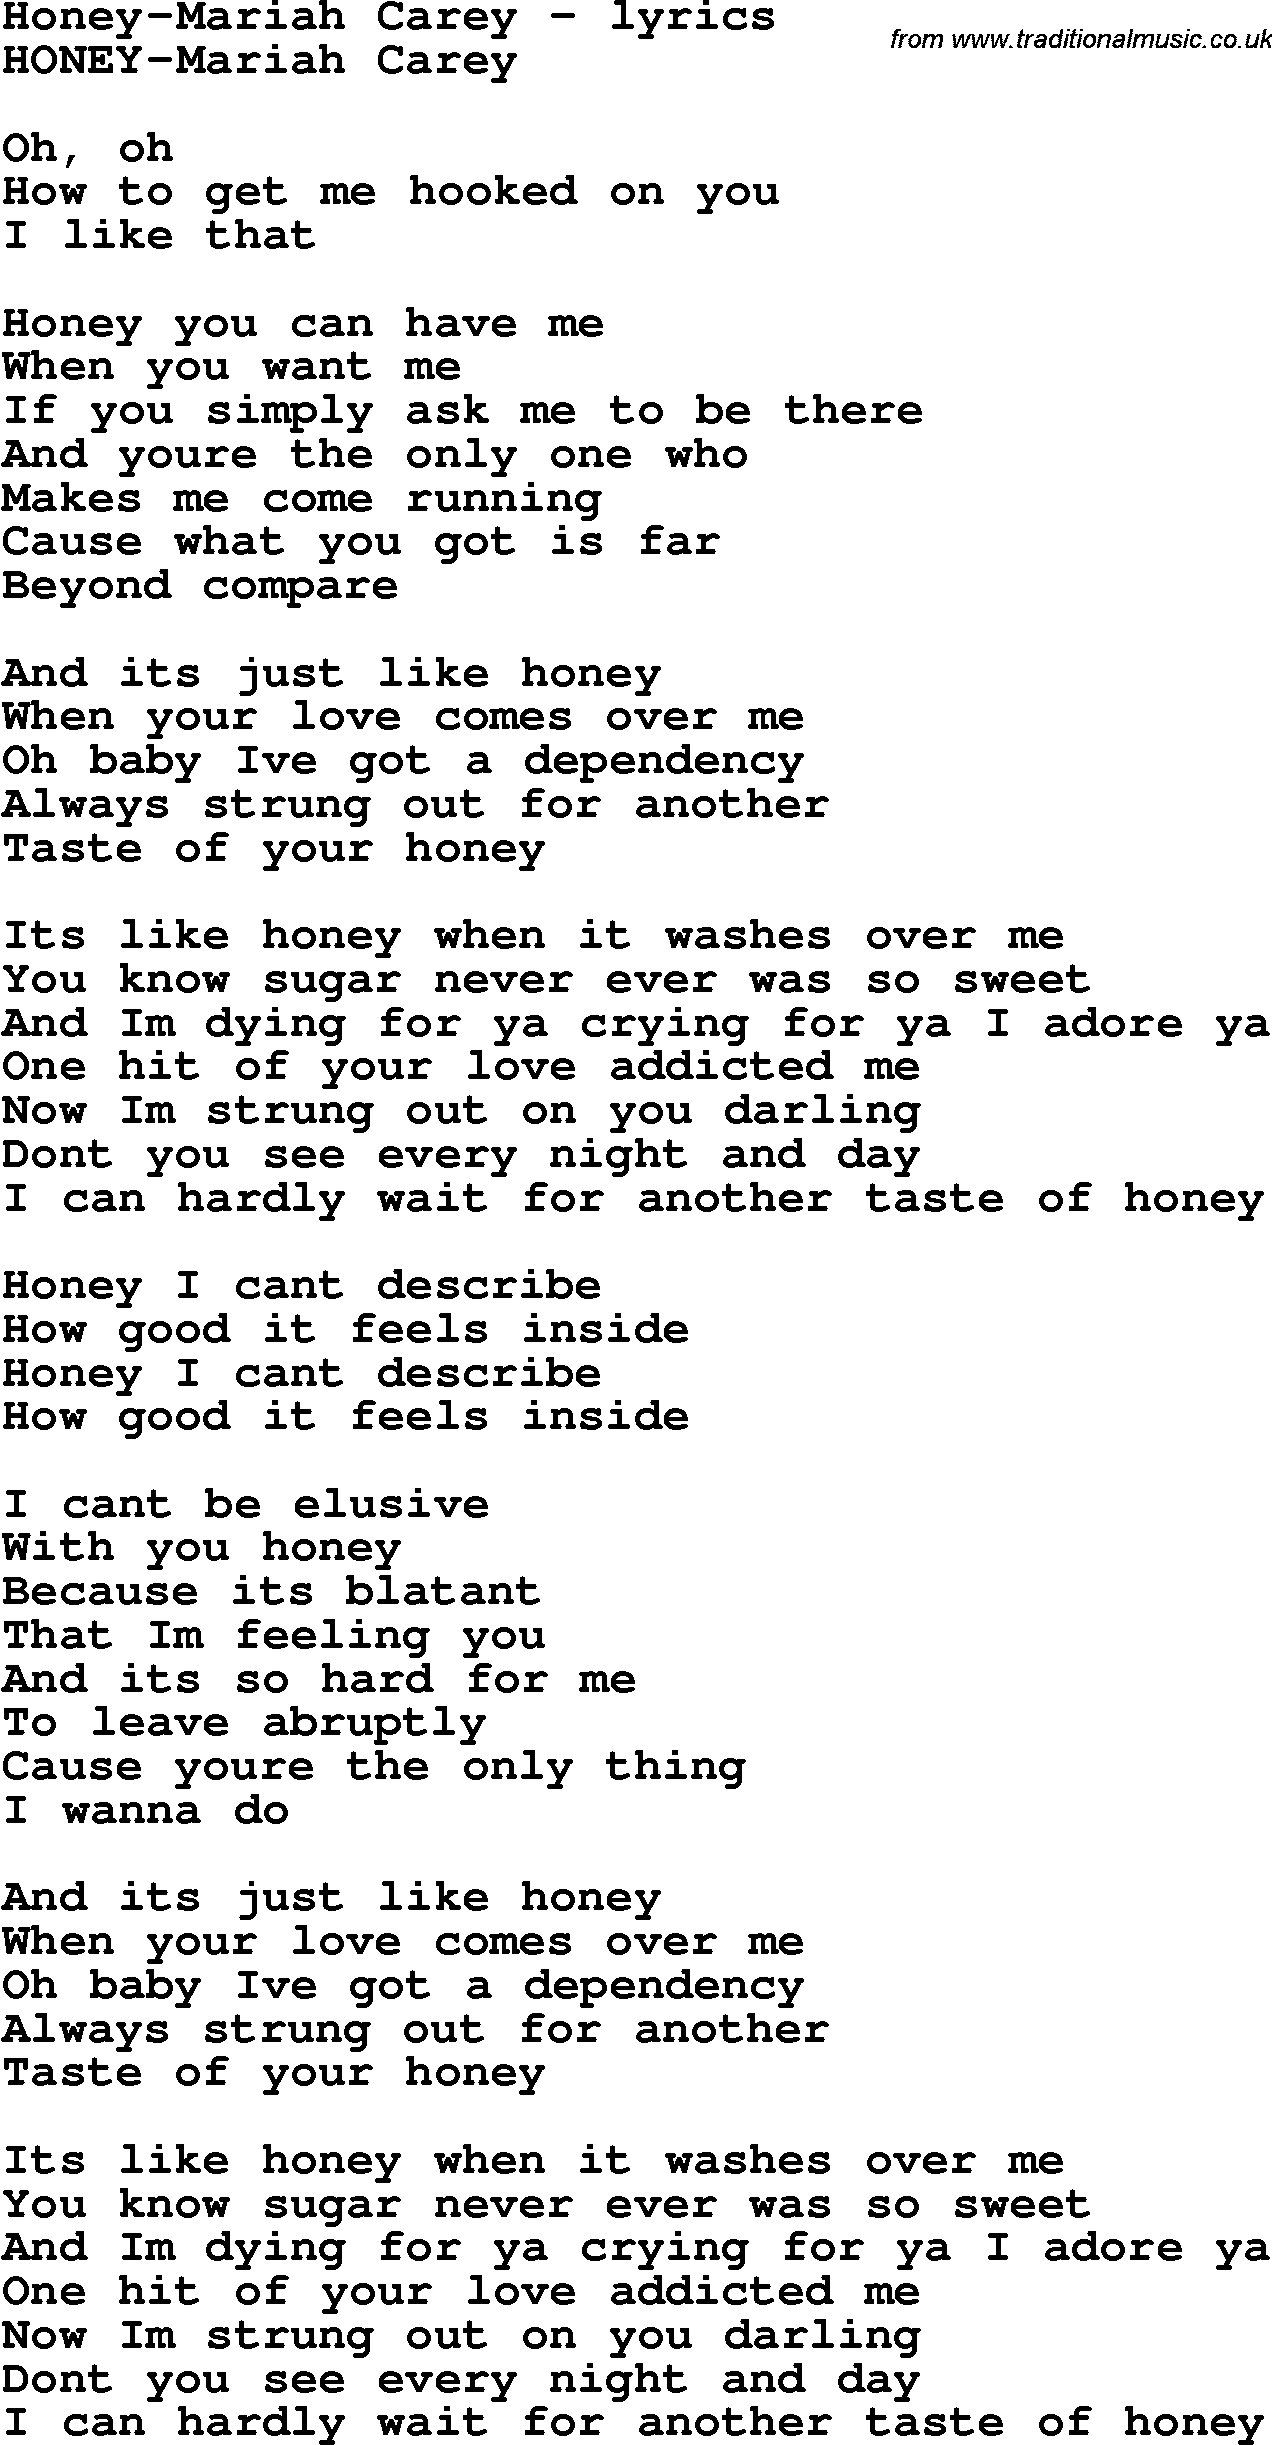 Love Song Lyrics for: Honey-Mariah Carey